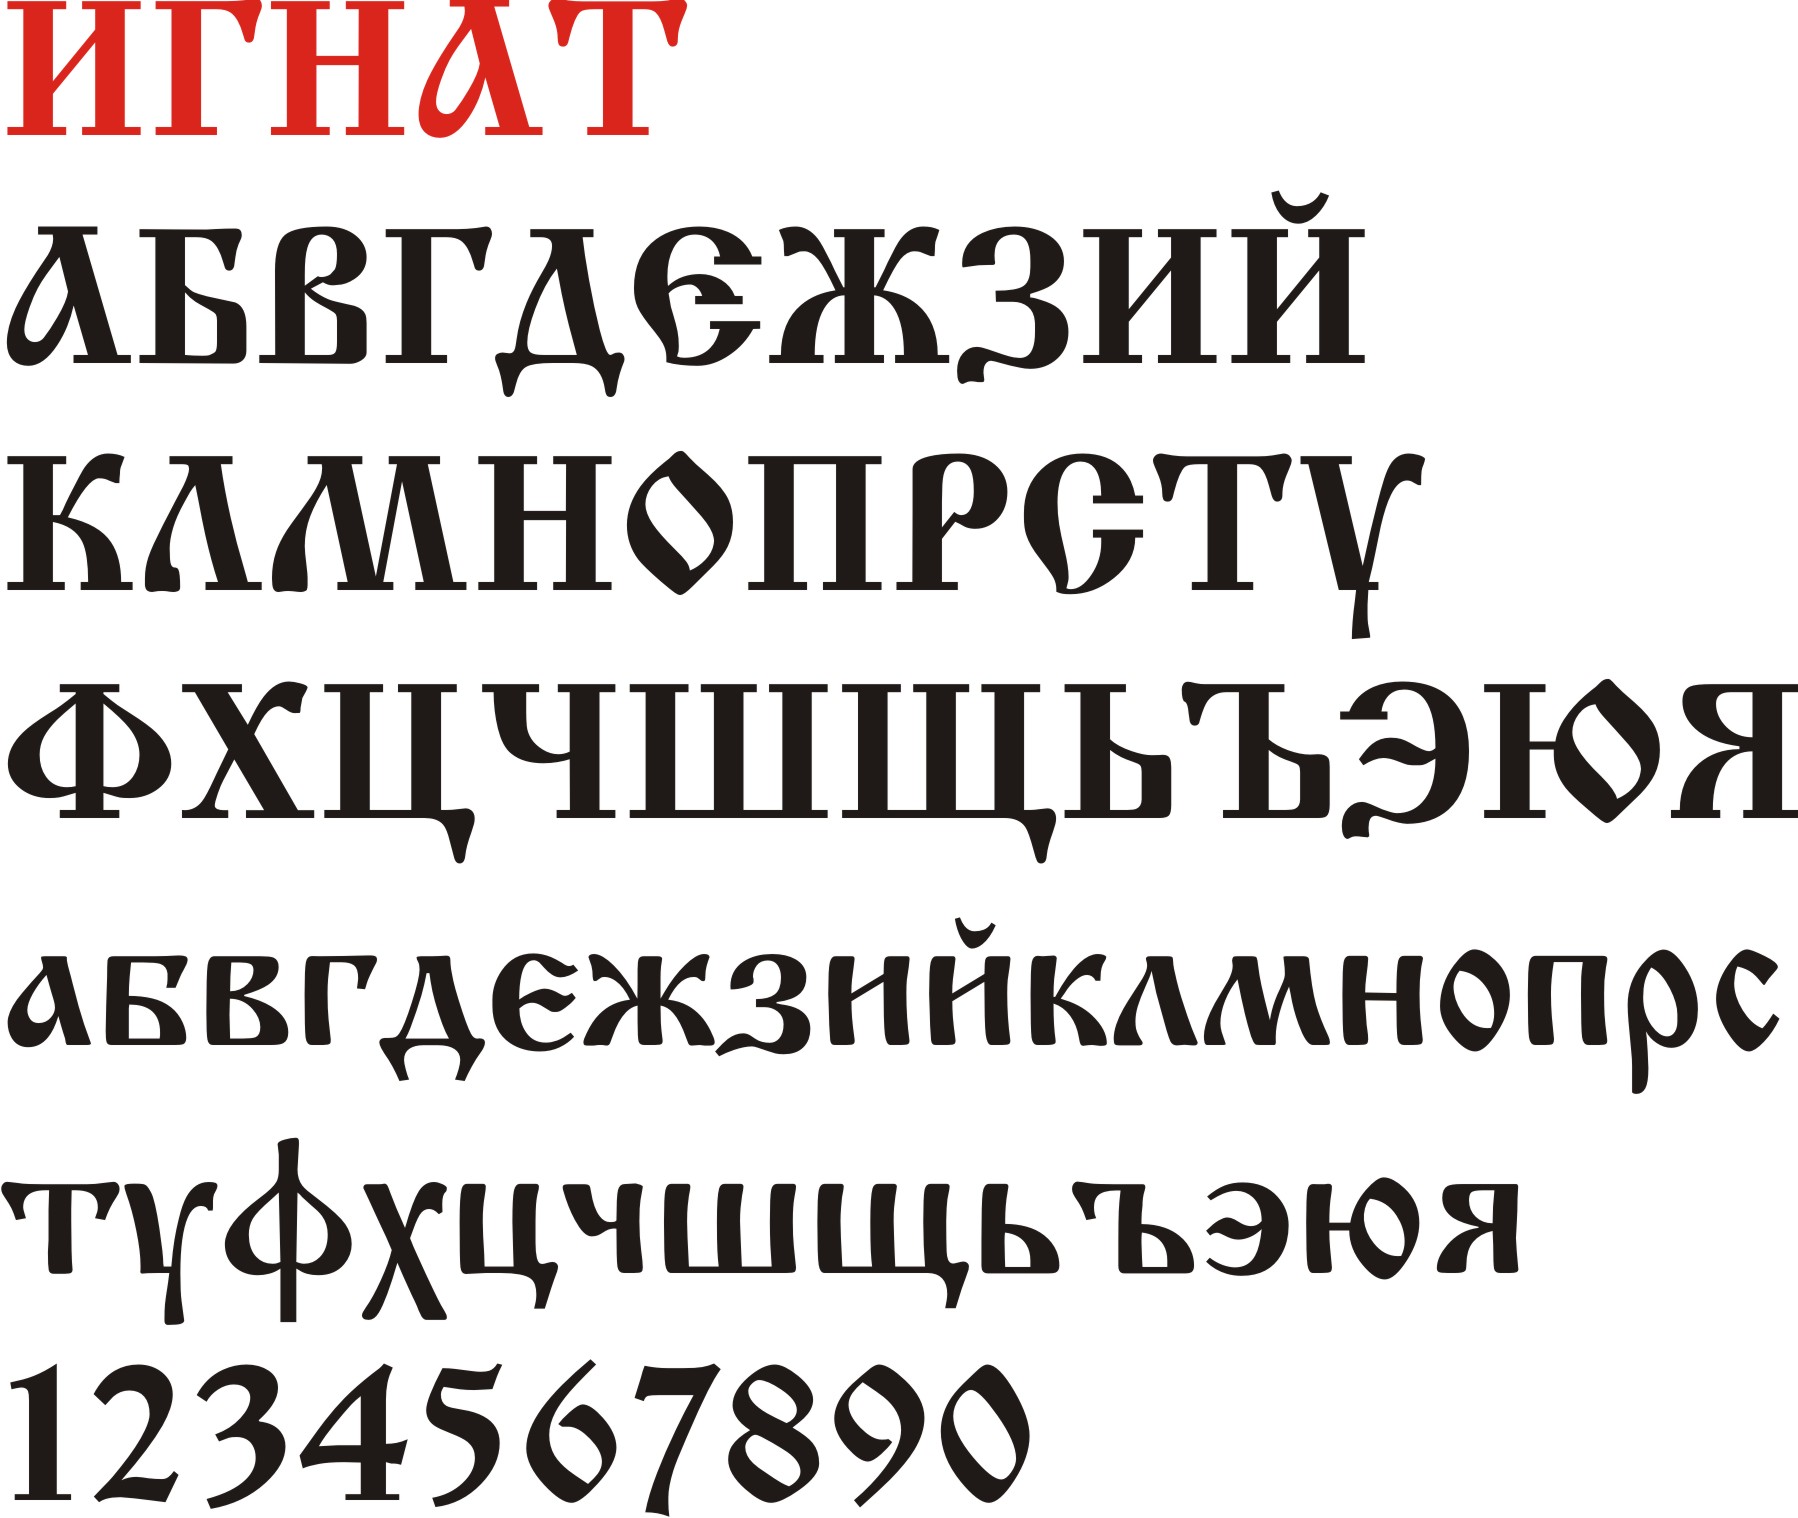 Шрифт для телеграмма русский фото 93